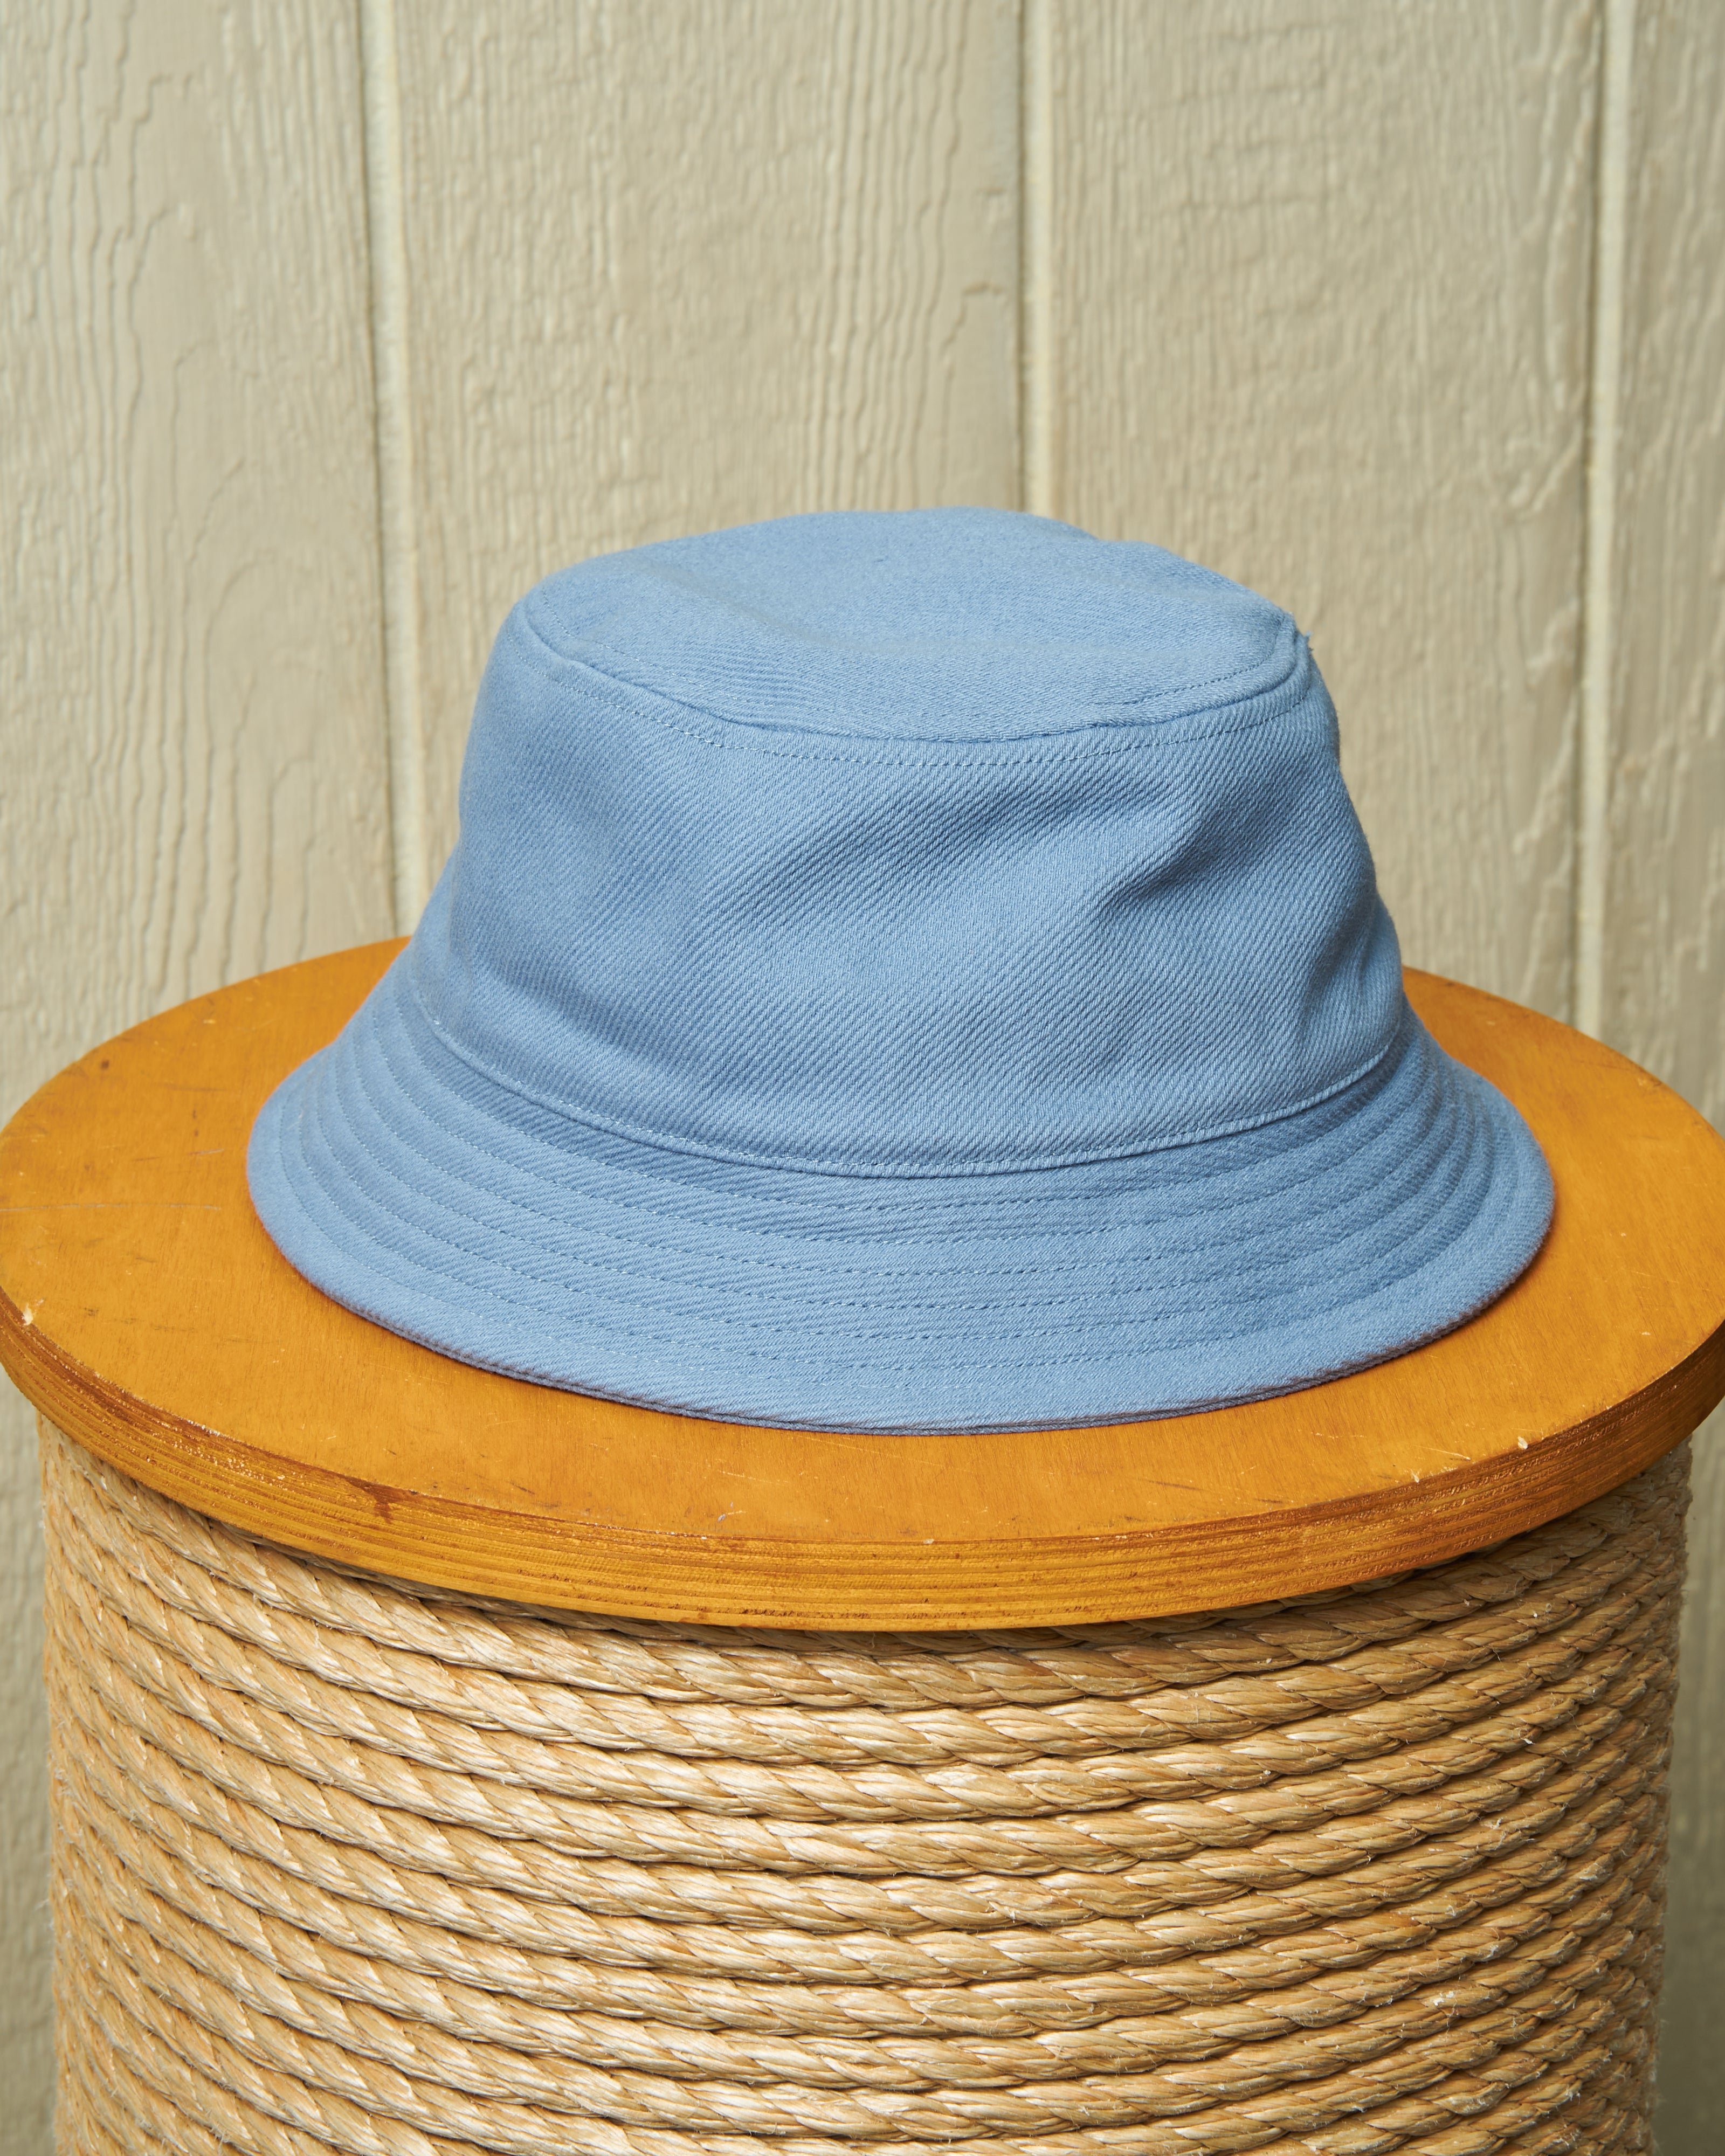 Classic Bucket Hat in Quaker – Blue Marine Supply Atlantic